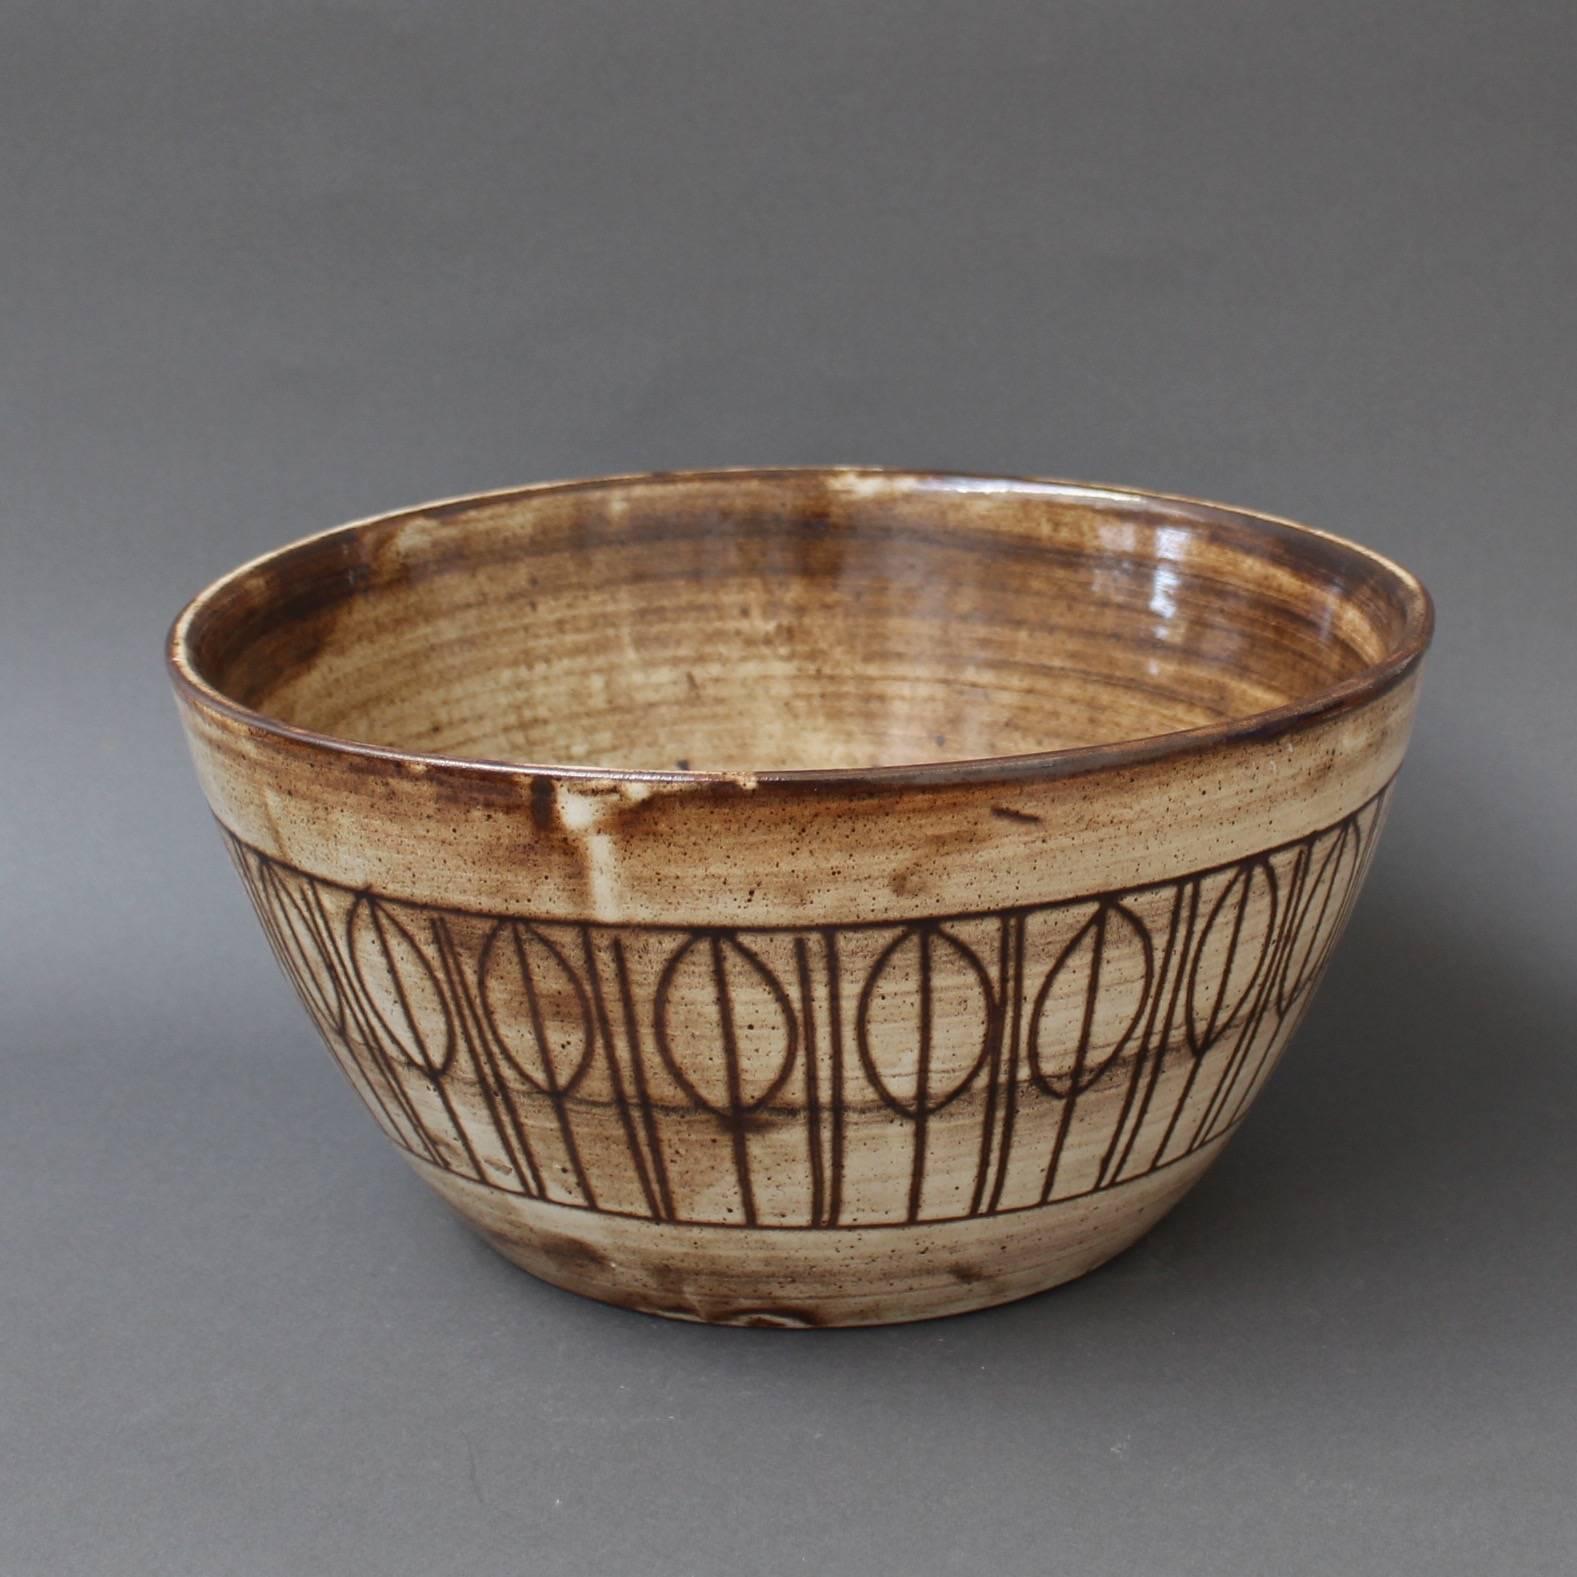 French Decorative Ceramic Bowl by Jacques Pouchain, Atelier Dieulefit, circa 1960s